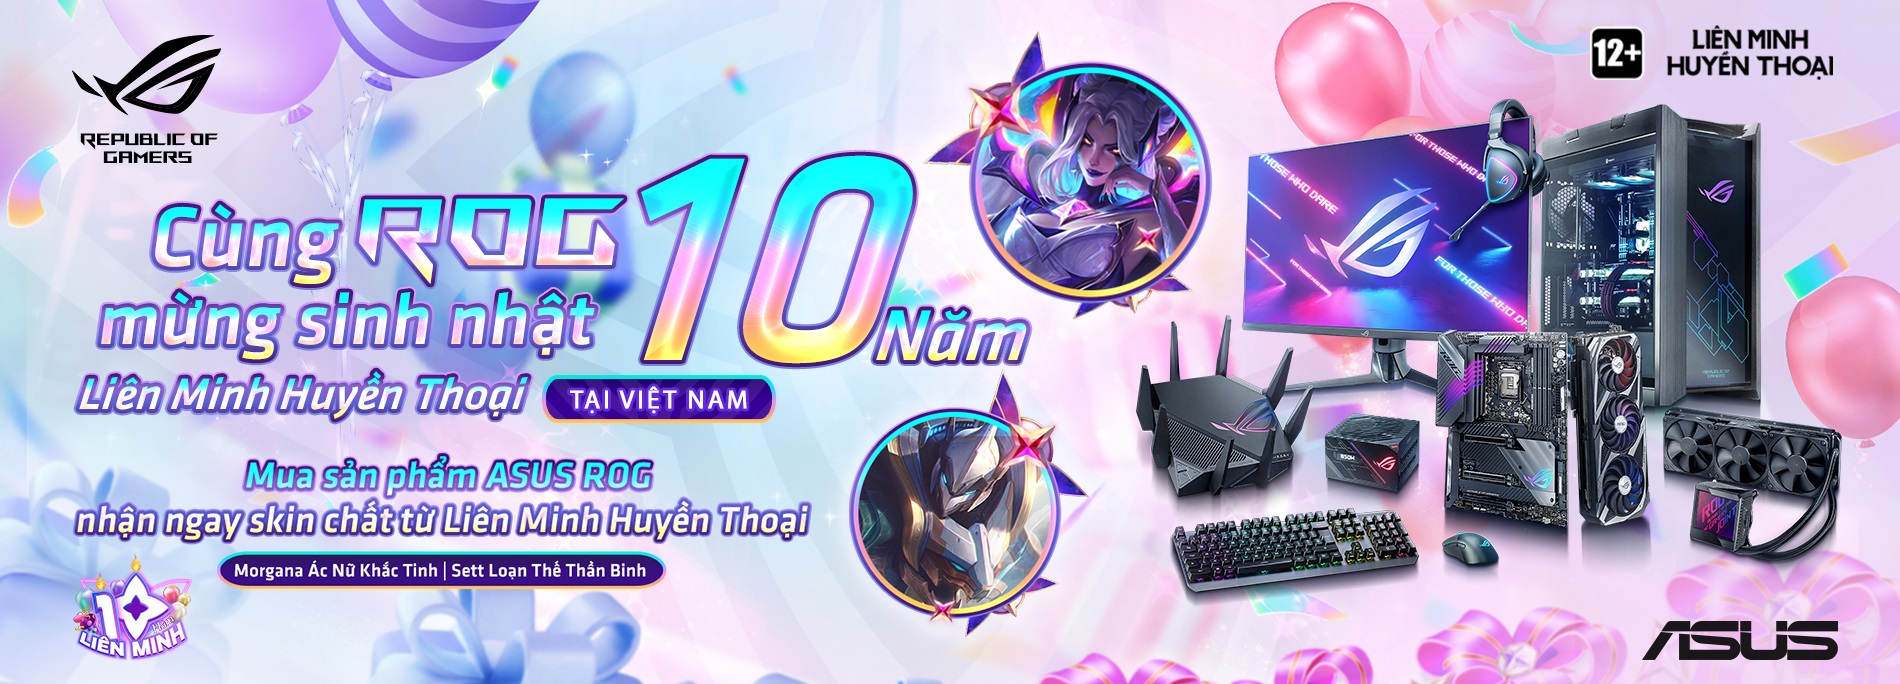 Buổi livestream sinh nhật 10 tuổi LMHT của Riot Games sẽ có cả tiếng Việt